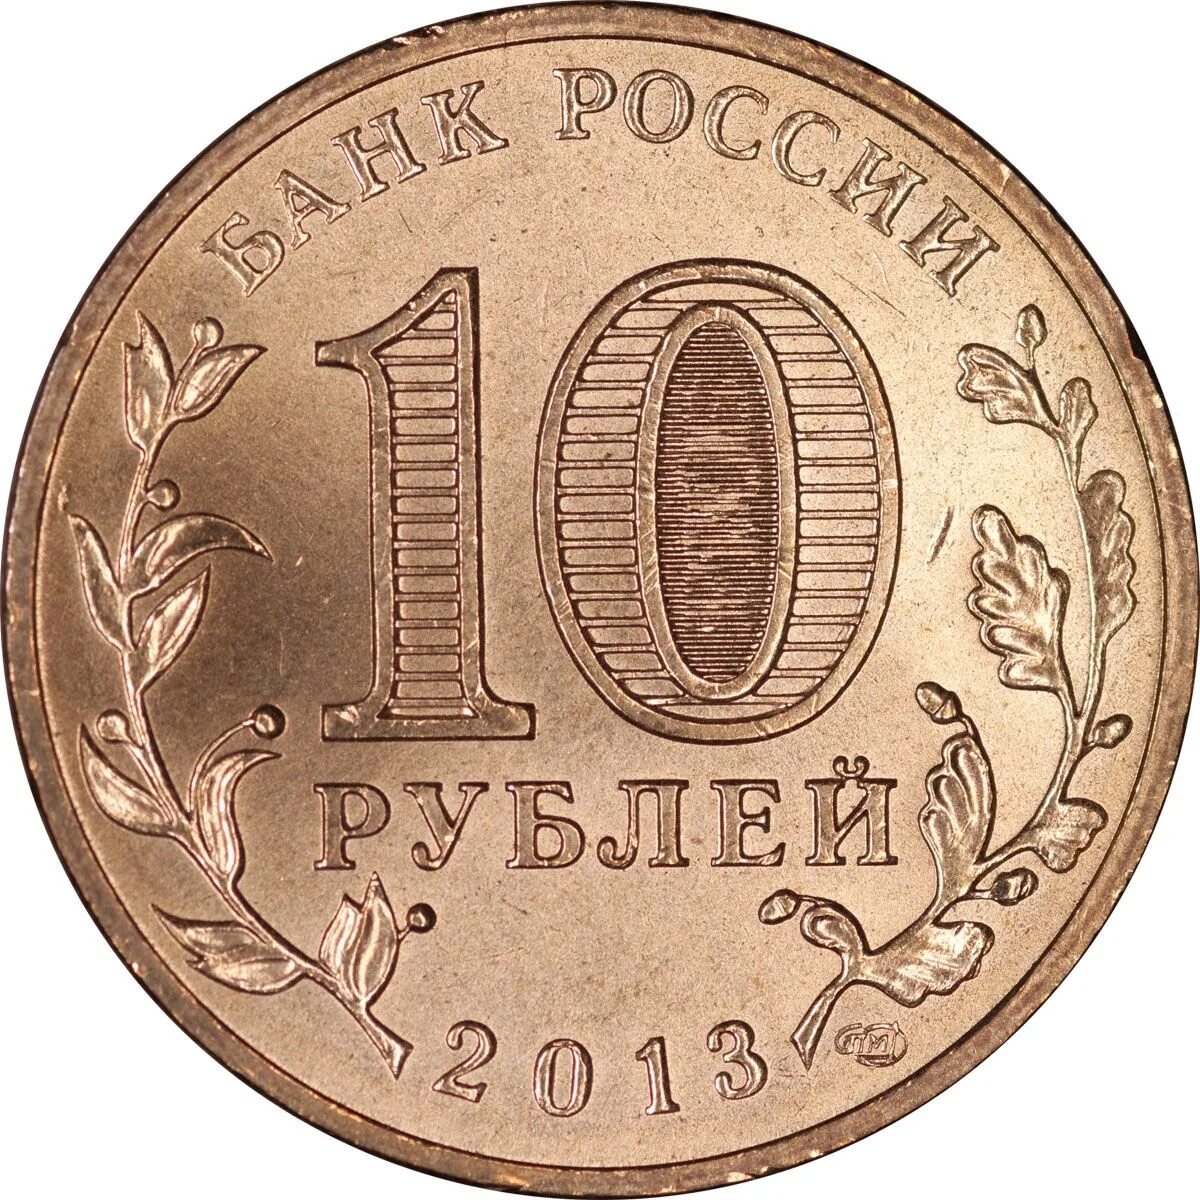 10 рубль где продают